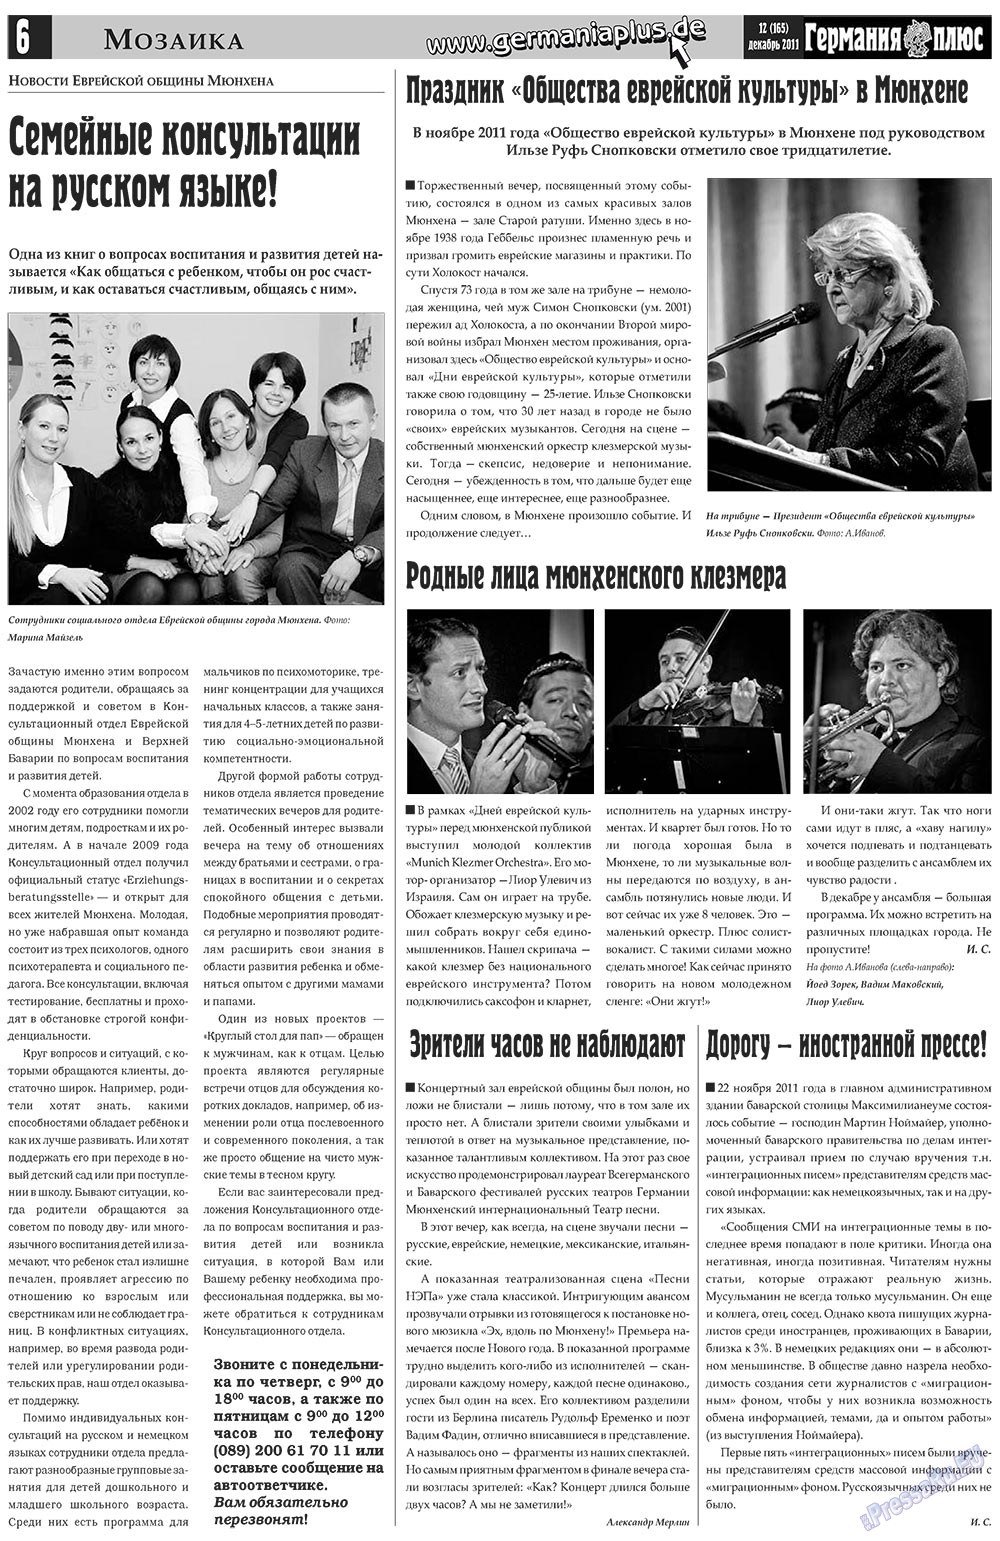 Германия плюс (газета). 2011 год, номер 12, стр. 6